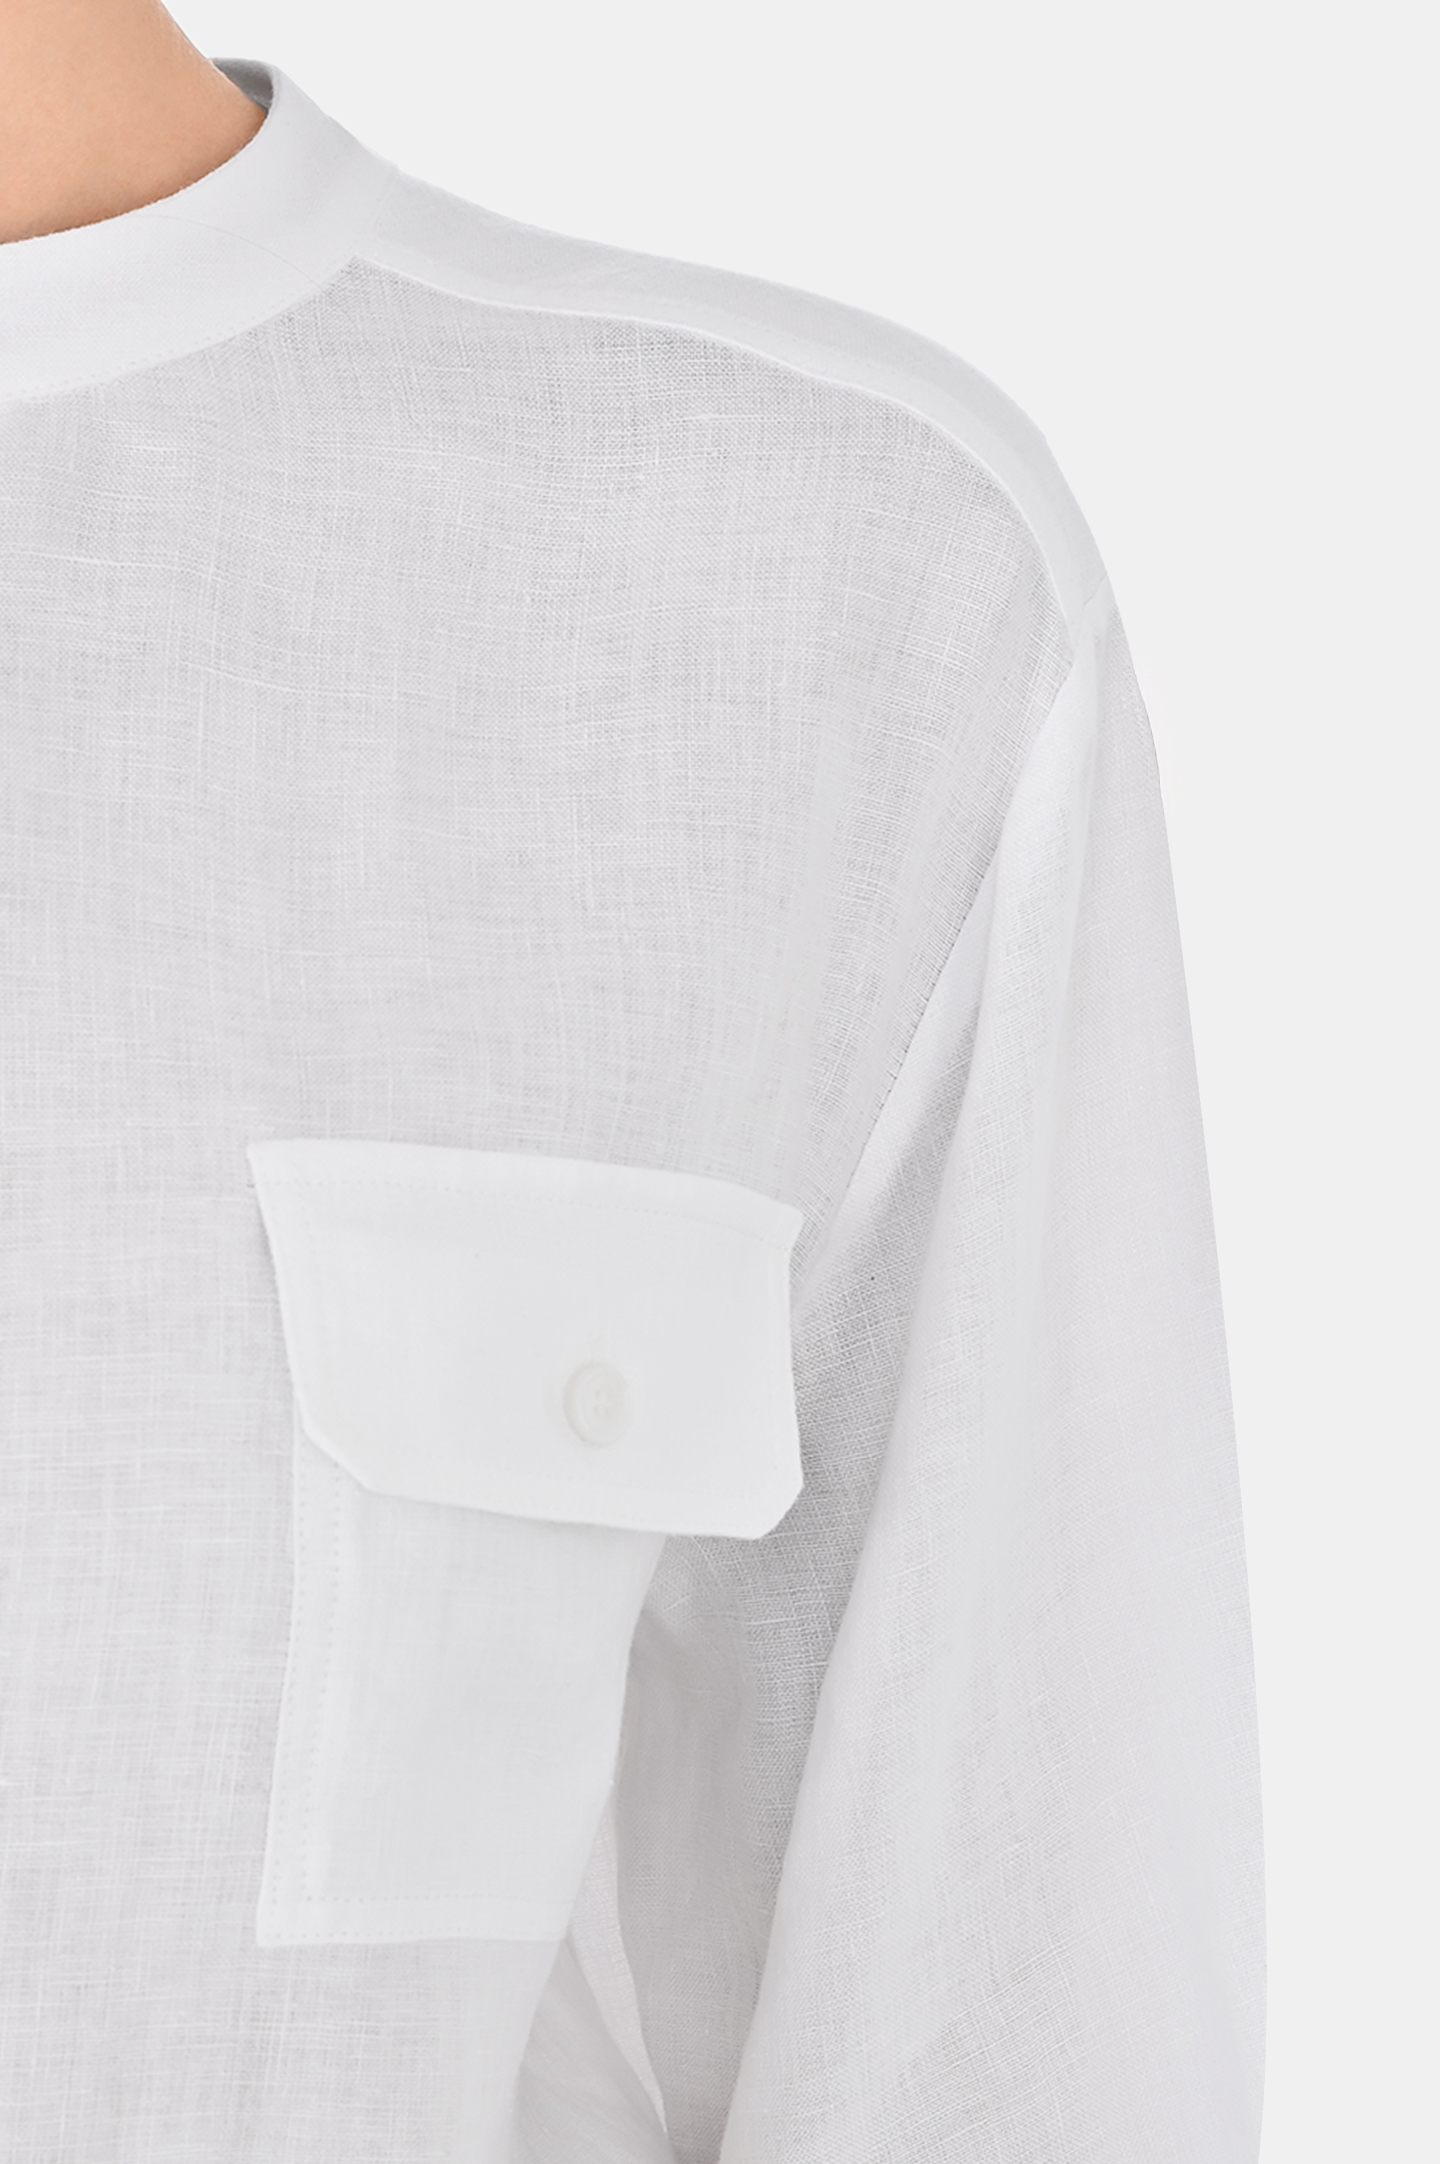 Блуза KITON D55448H08838, цвет: Белый, Женский